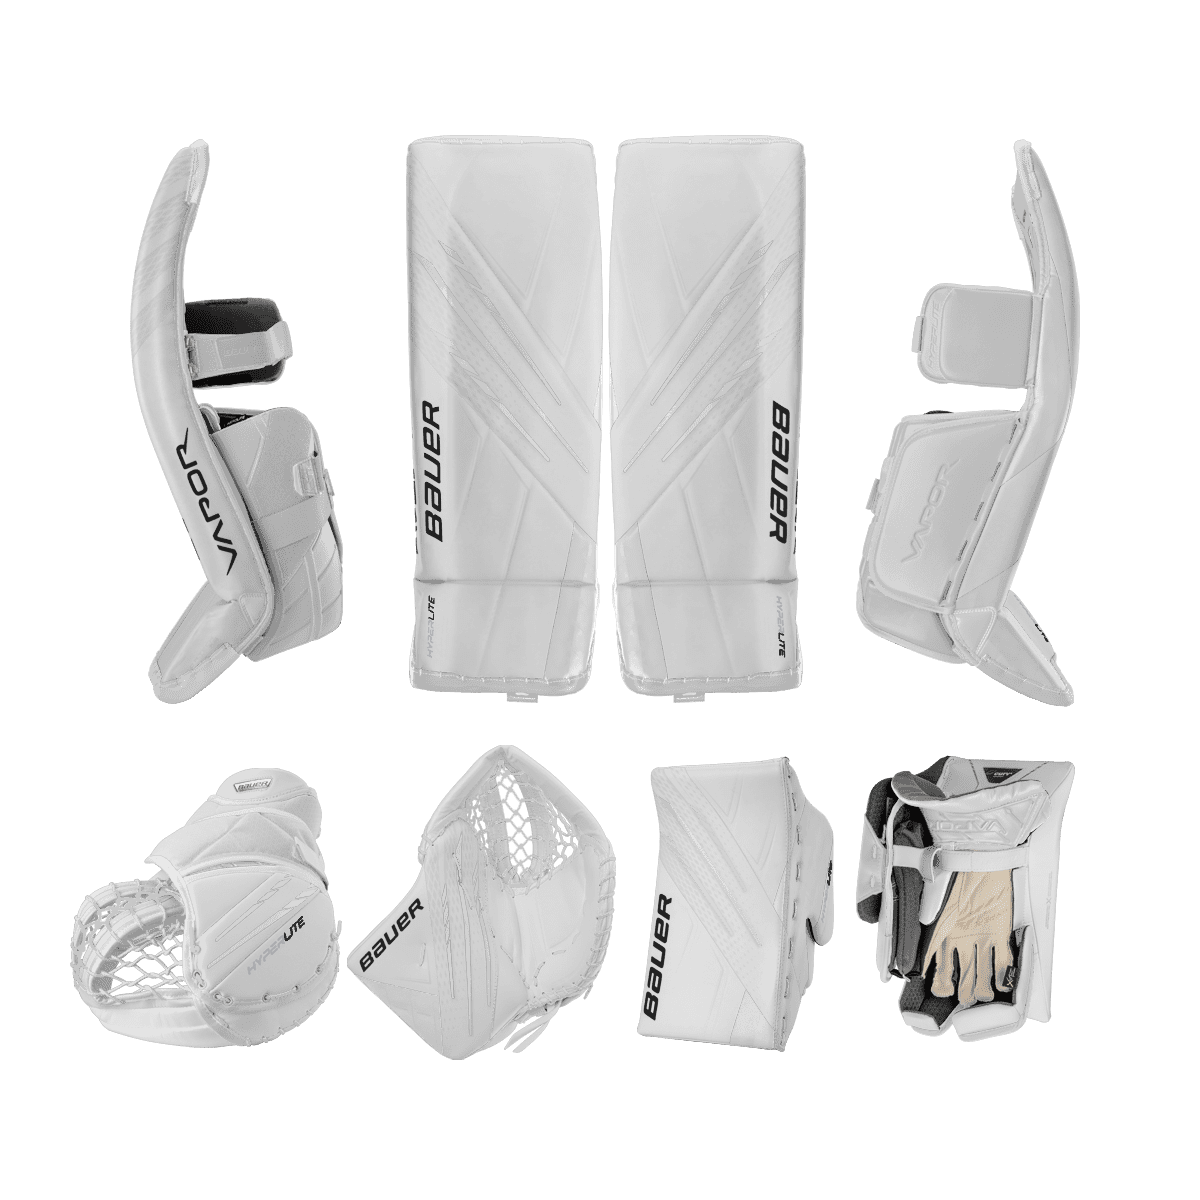 Bauer Vapor Hyperlite Goalie Equipment - Pro Custom - Custom Design - Senior White/Default Inspiration